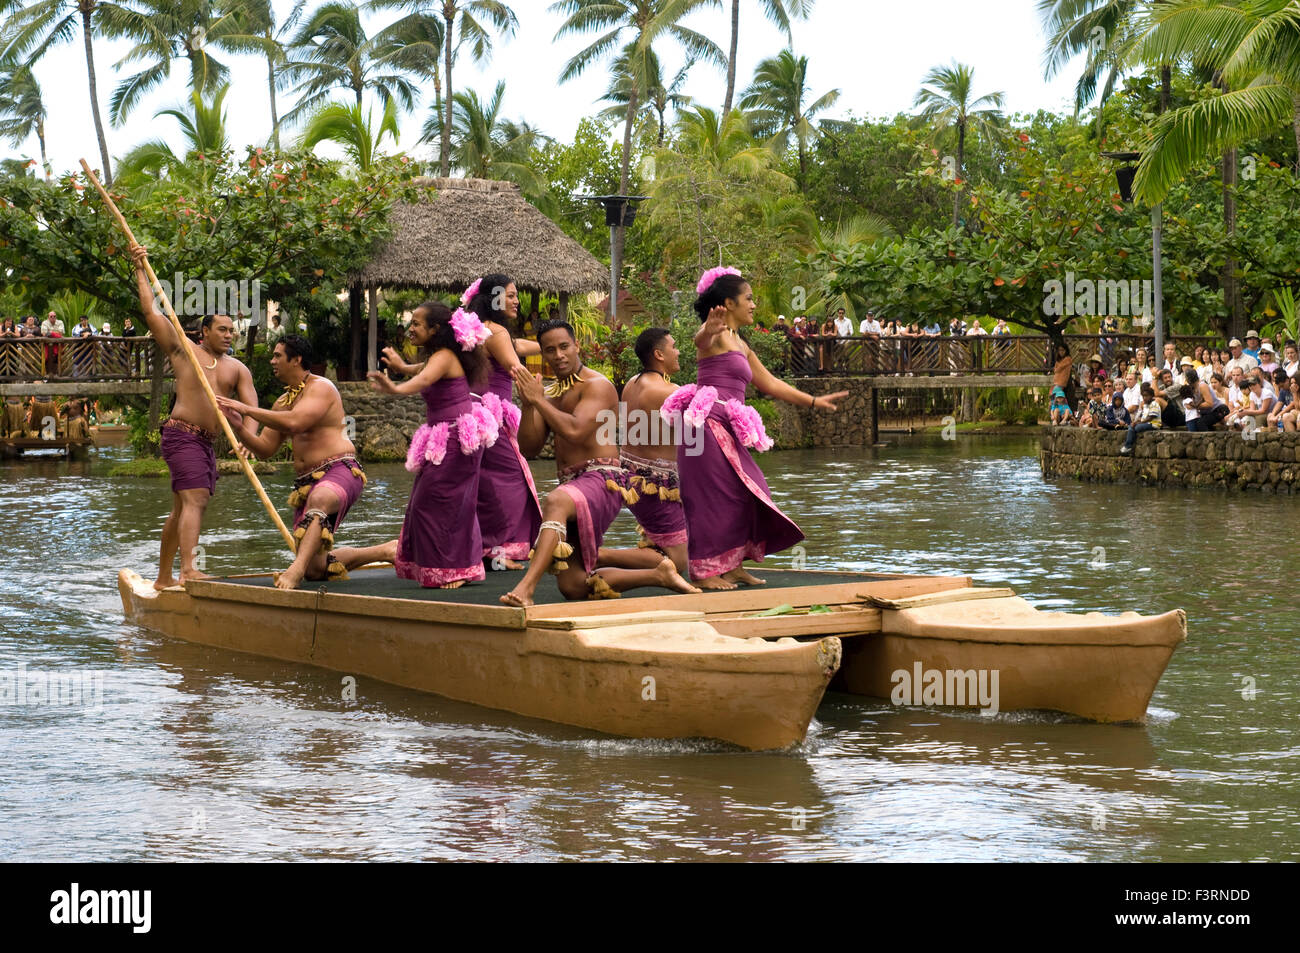 Mostra centrale in uno dei laghi chiamato Rainbown di paradiso dove canoe parade cantando canzoni, danze e arti marziali in ogni Foto Stock